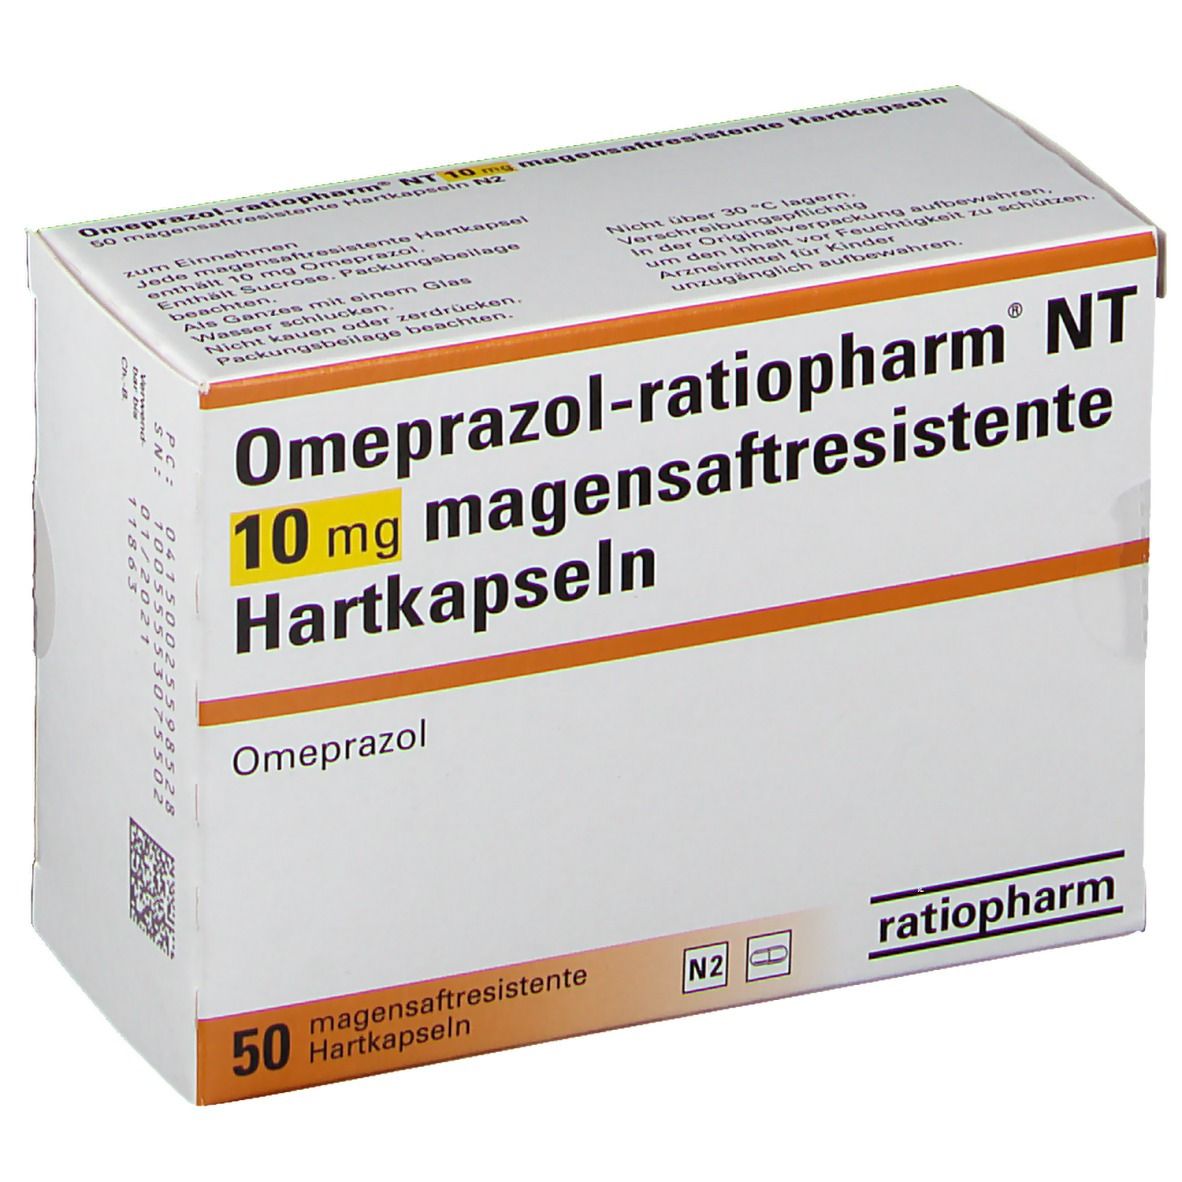 Omeprazol-ratiopharm® NT 10mg